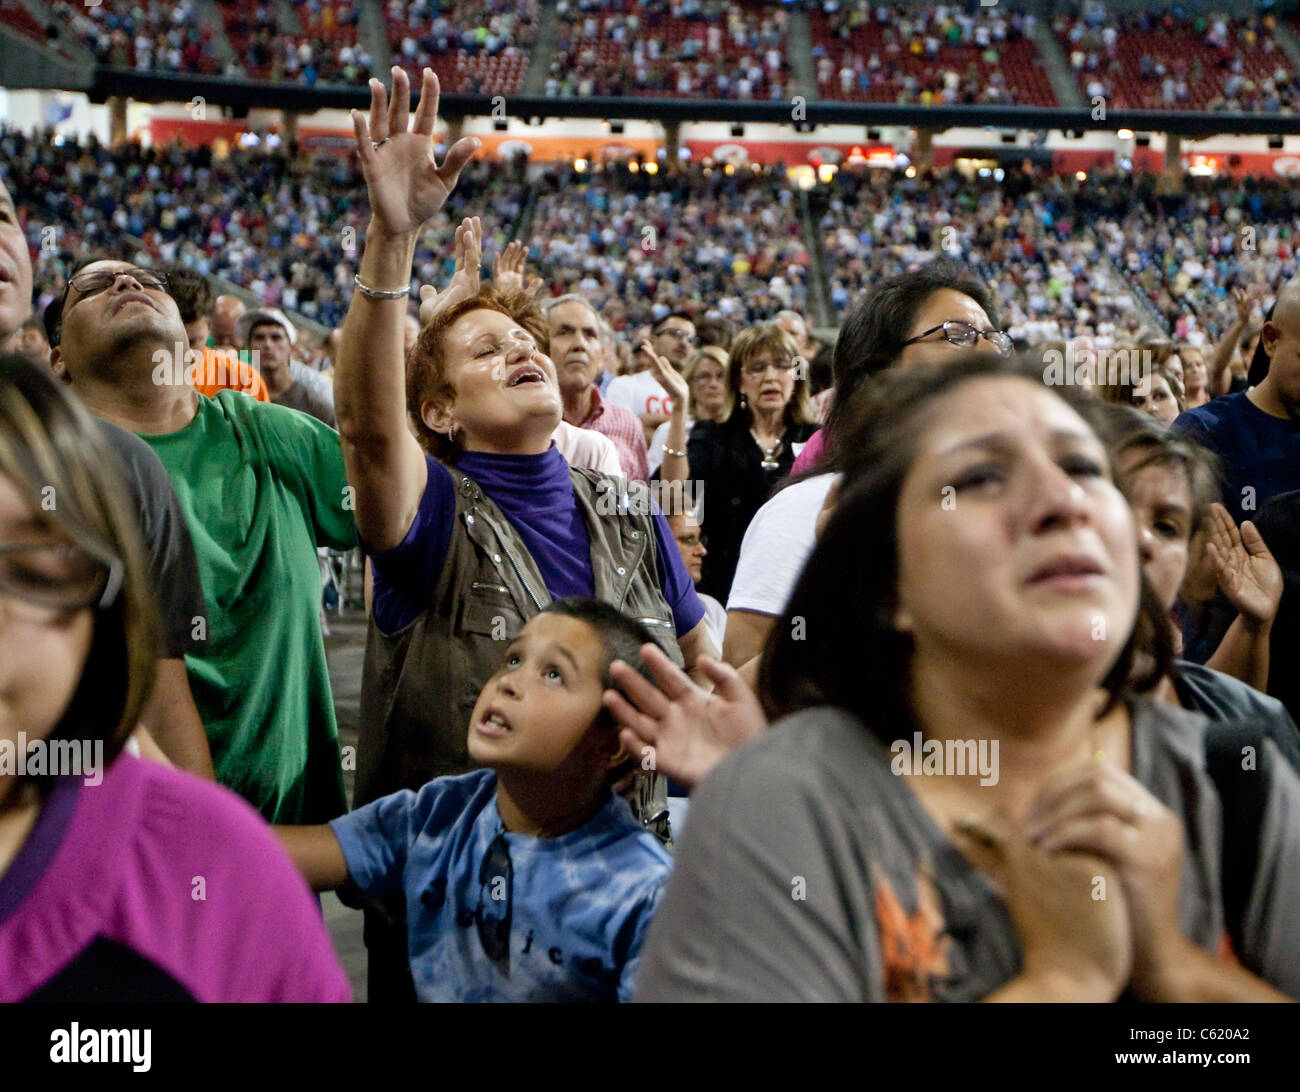 Fidèles religieux chrétiens prier, adorer, chanter et danser pendant toute la journée un événement de prière à Houston, Texas Banque D'Images